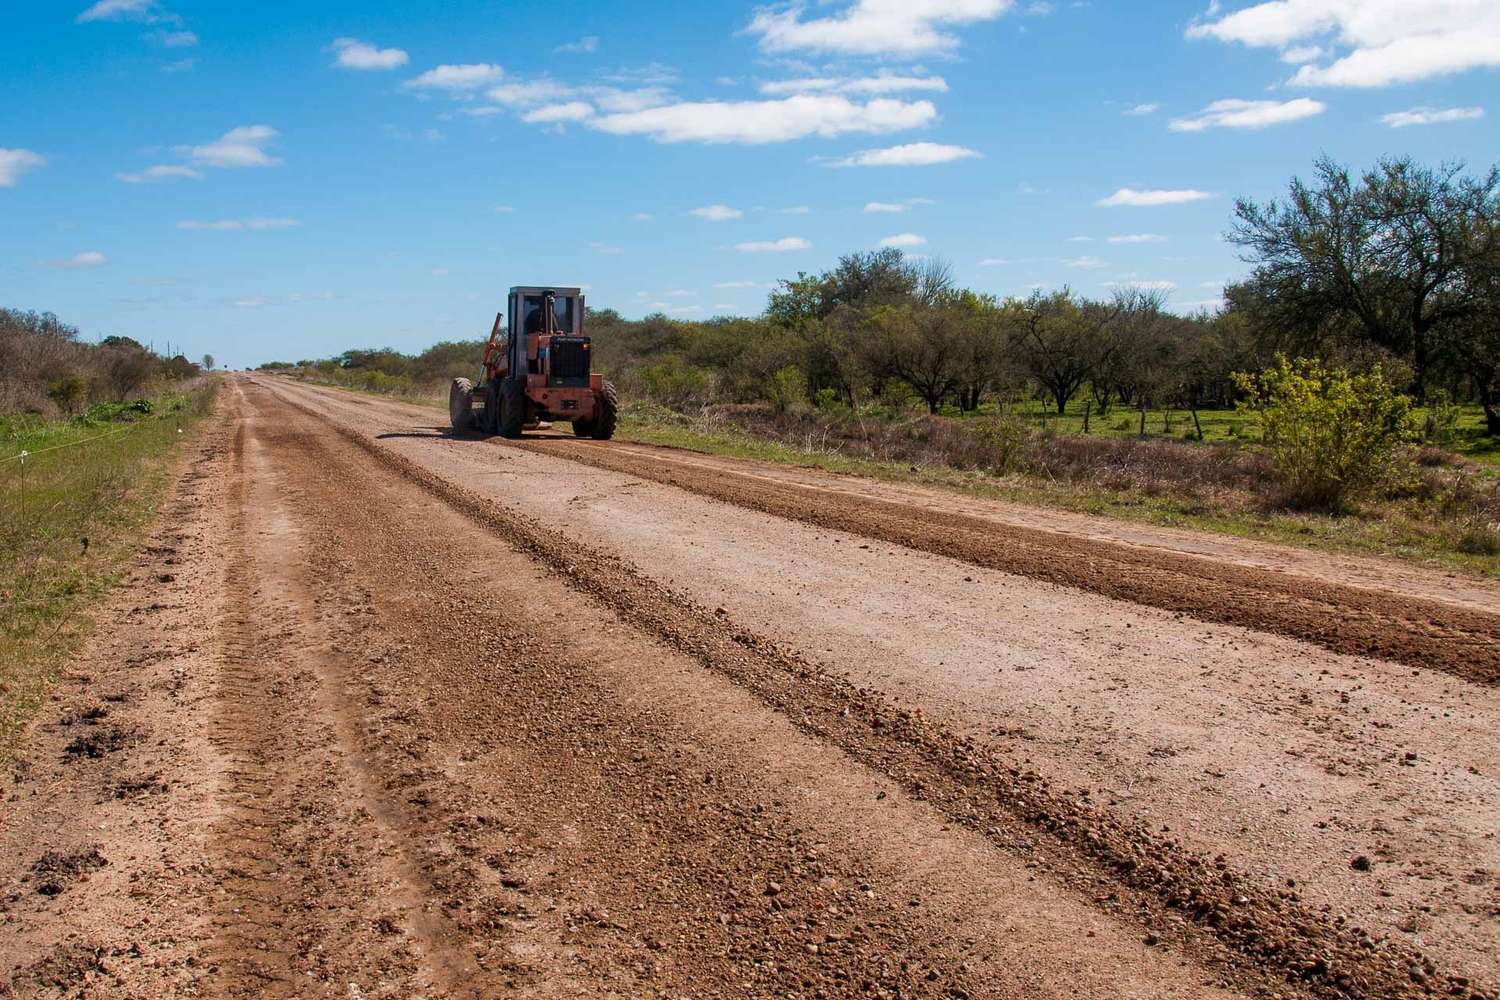 Consolidan la transitabilidad de la Ruta 33 entre los departamentos Paraná, Nogoyá y Tala